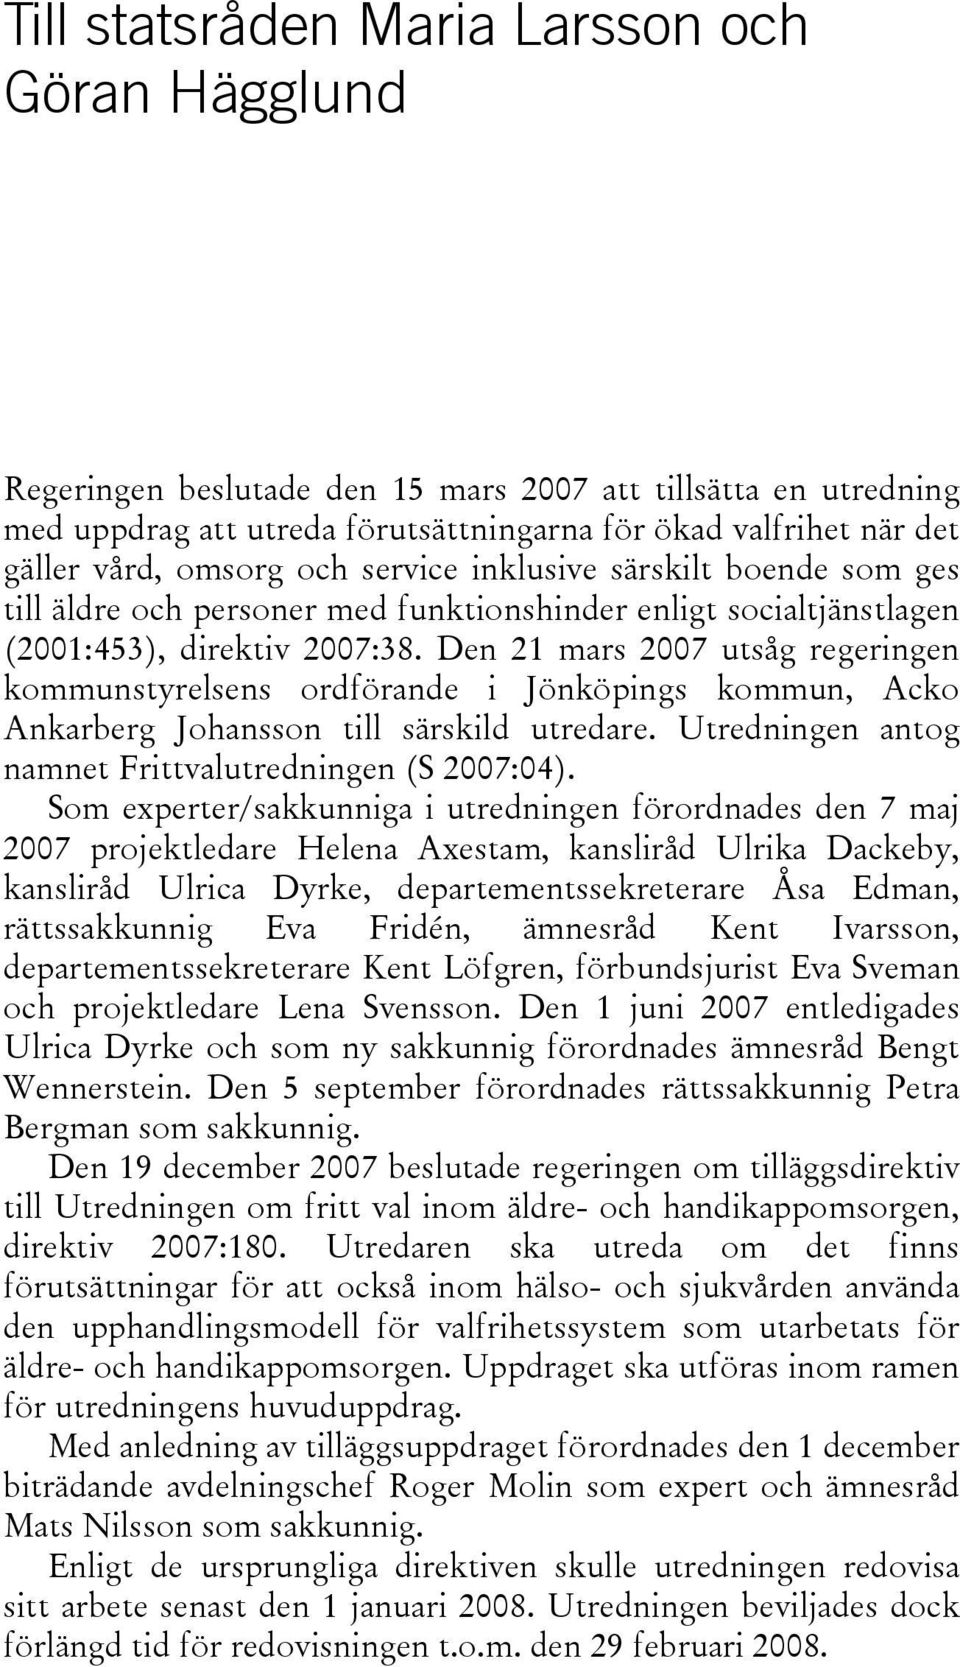 Den 21 mars 2007 utsåg regeringen kommunstyrelsens ordförande i Jönköpings kommun, Acko Ankarberg Johansson till särskild utredare. Utredningen antog namnet Frittvalutredningen (S 2007:04).